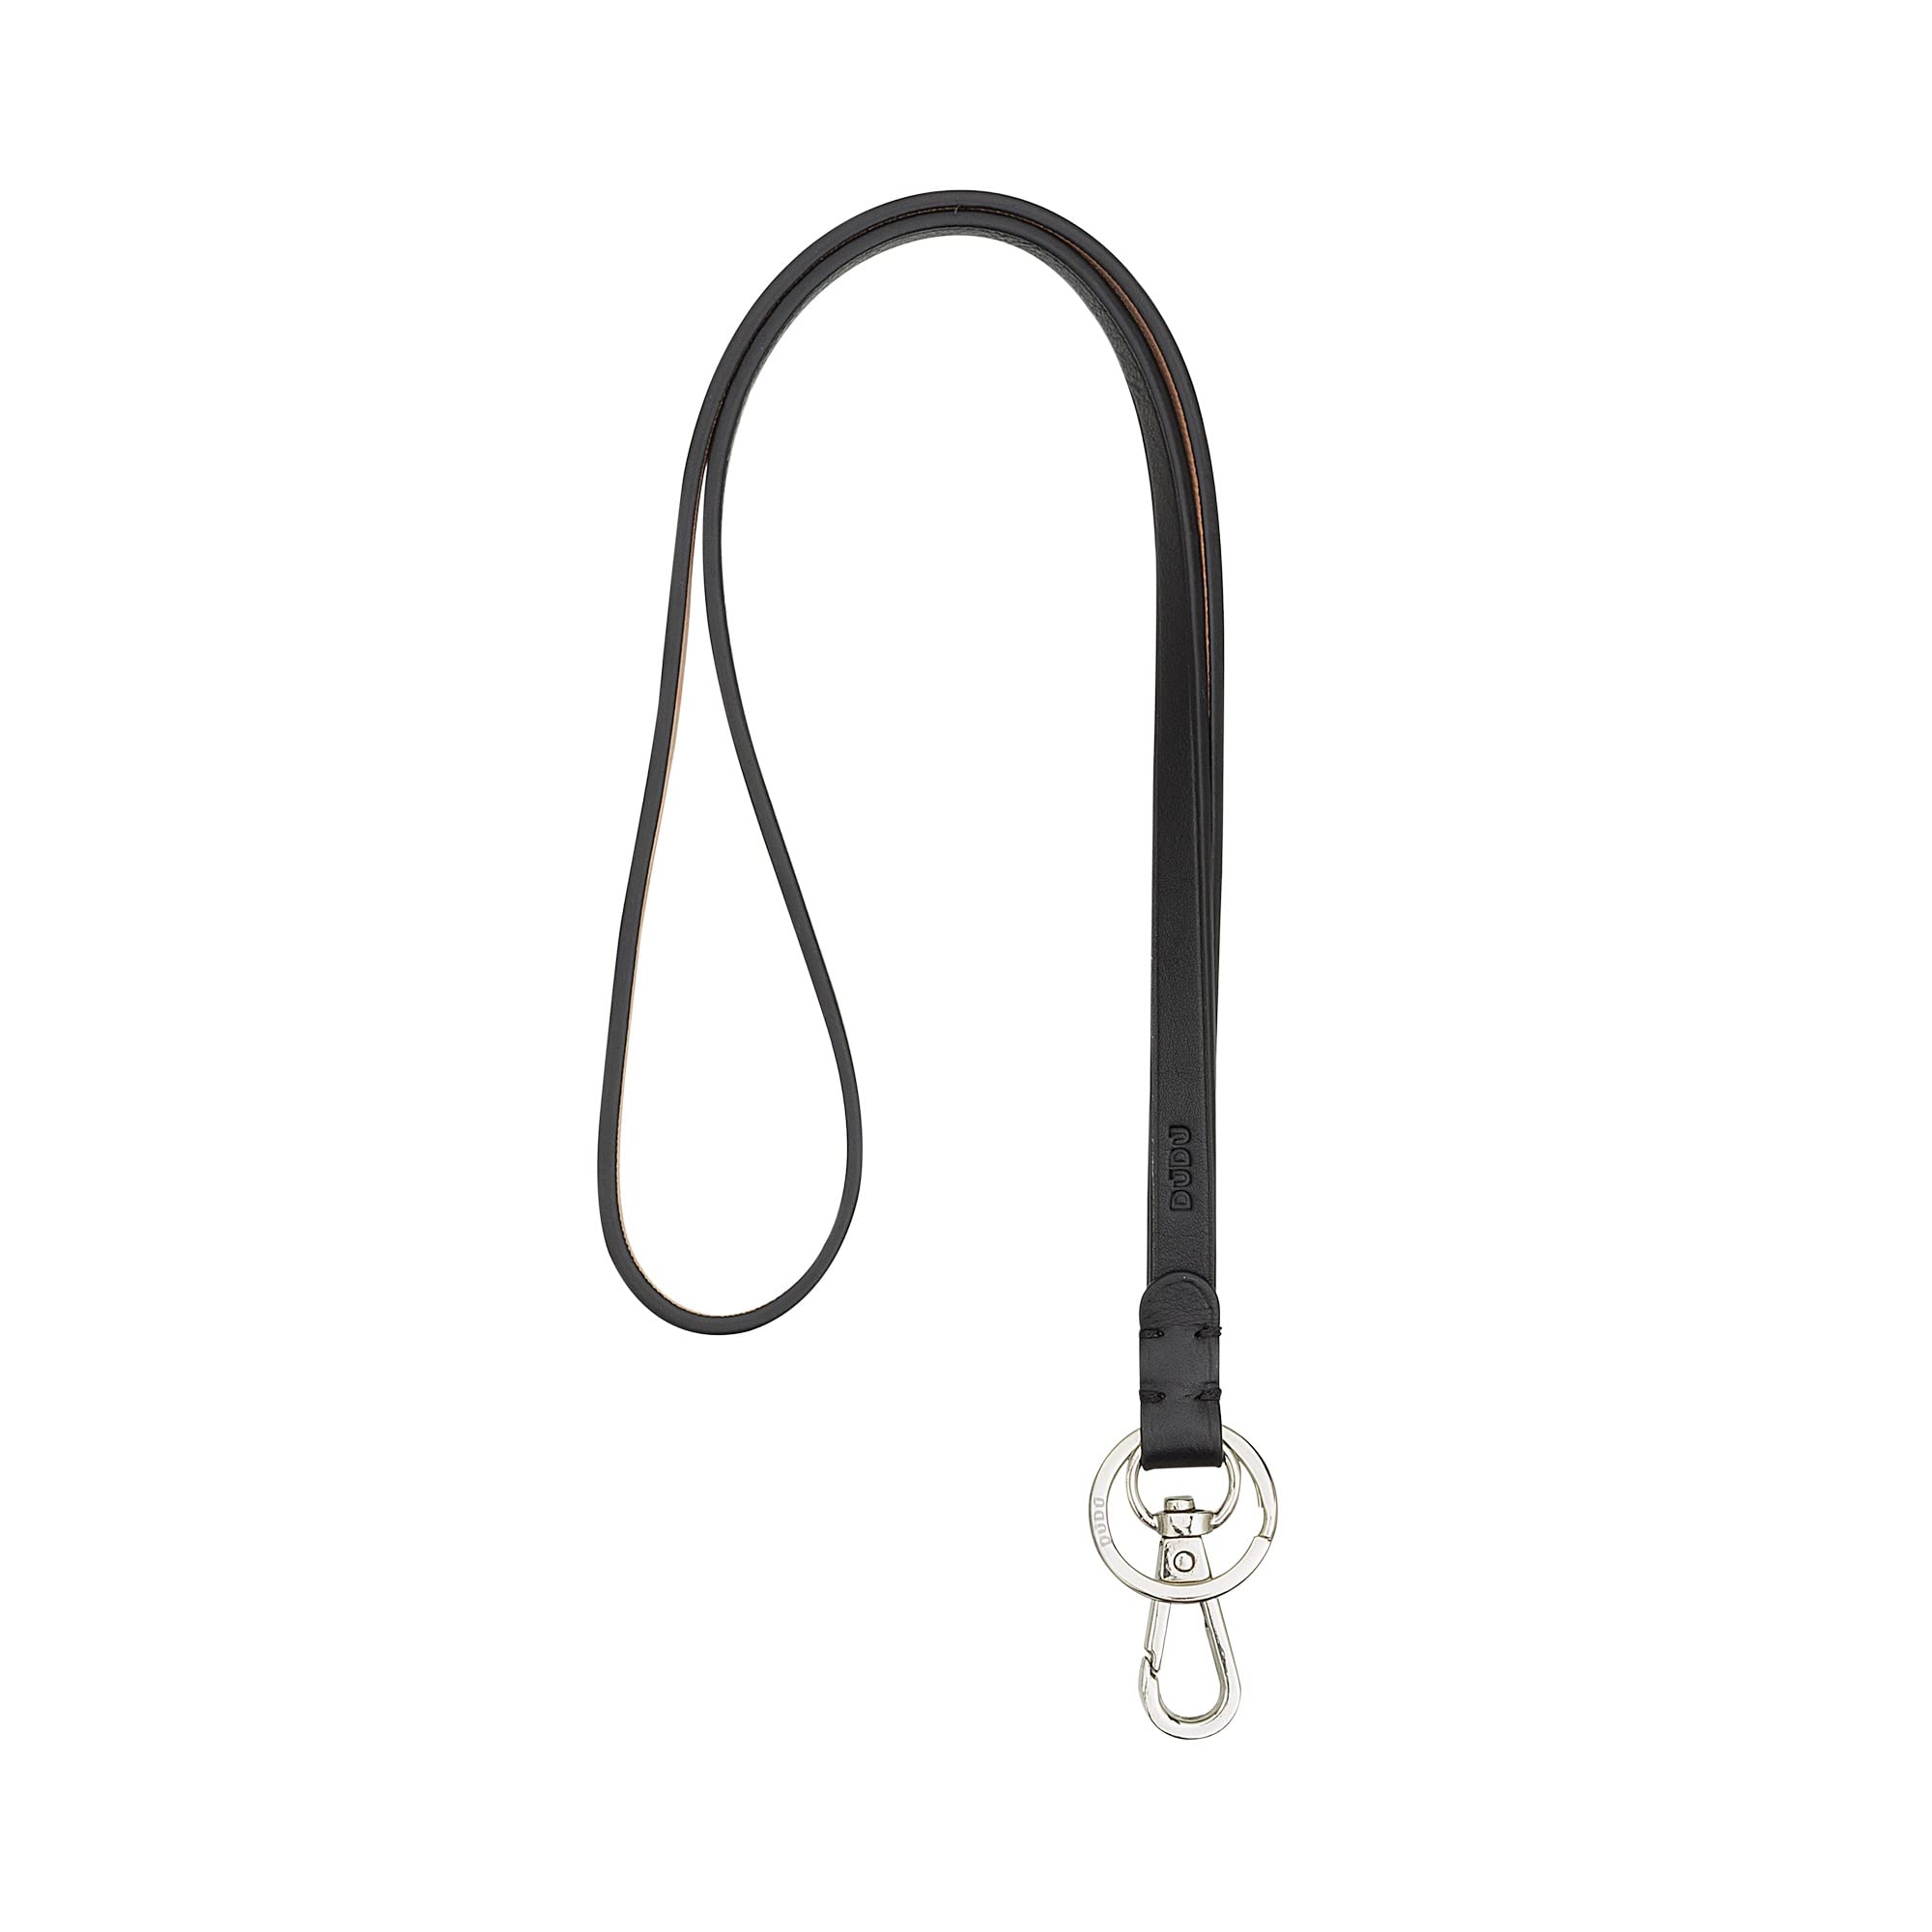 DUDU Schlüsselbund aus Echt Leder mit Metallring und Karabinerhaken, Schlüsselband für Schlüssel, Ausweishülle, Auto, Schlüsselanhänger Schwarz